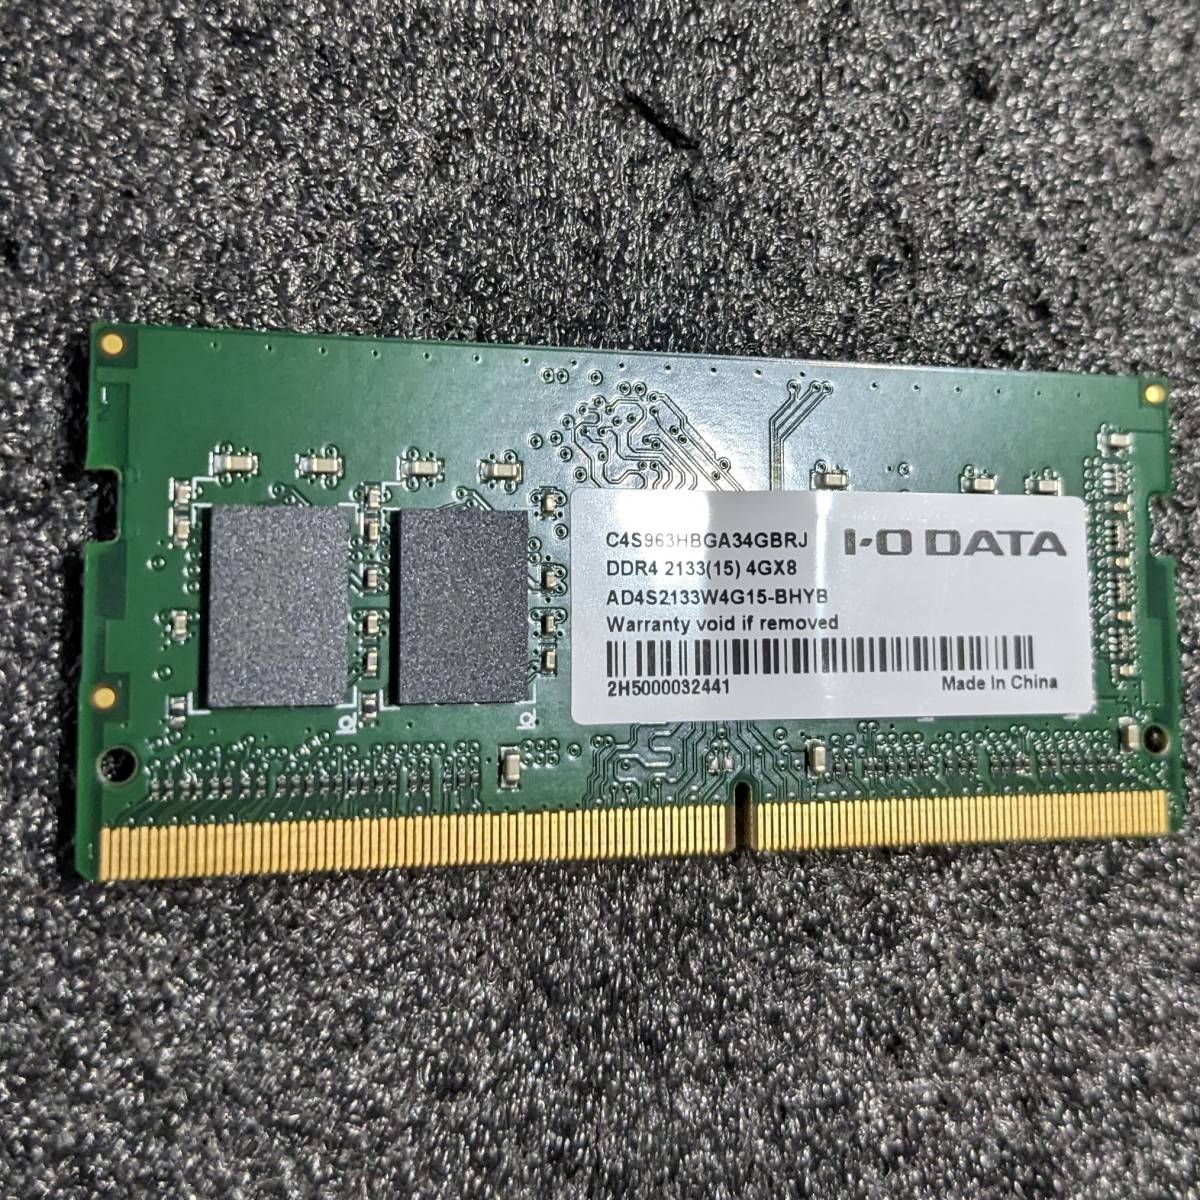 【中古】DDR4 SODIMM 4GB1枚 I-O DATA AD4S2133W4G15-BHYB [DDR4-2133 PC4-17000]